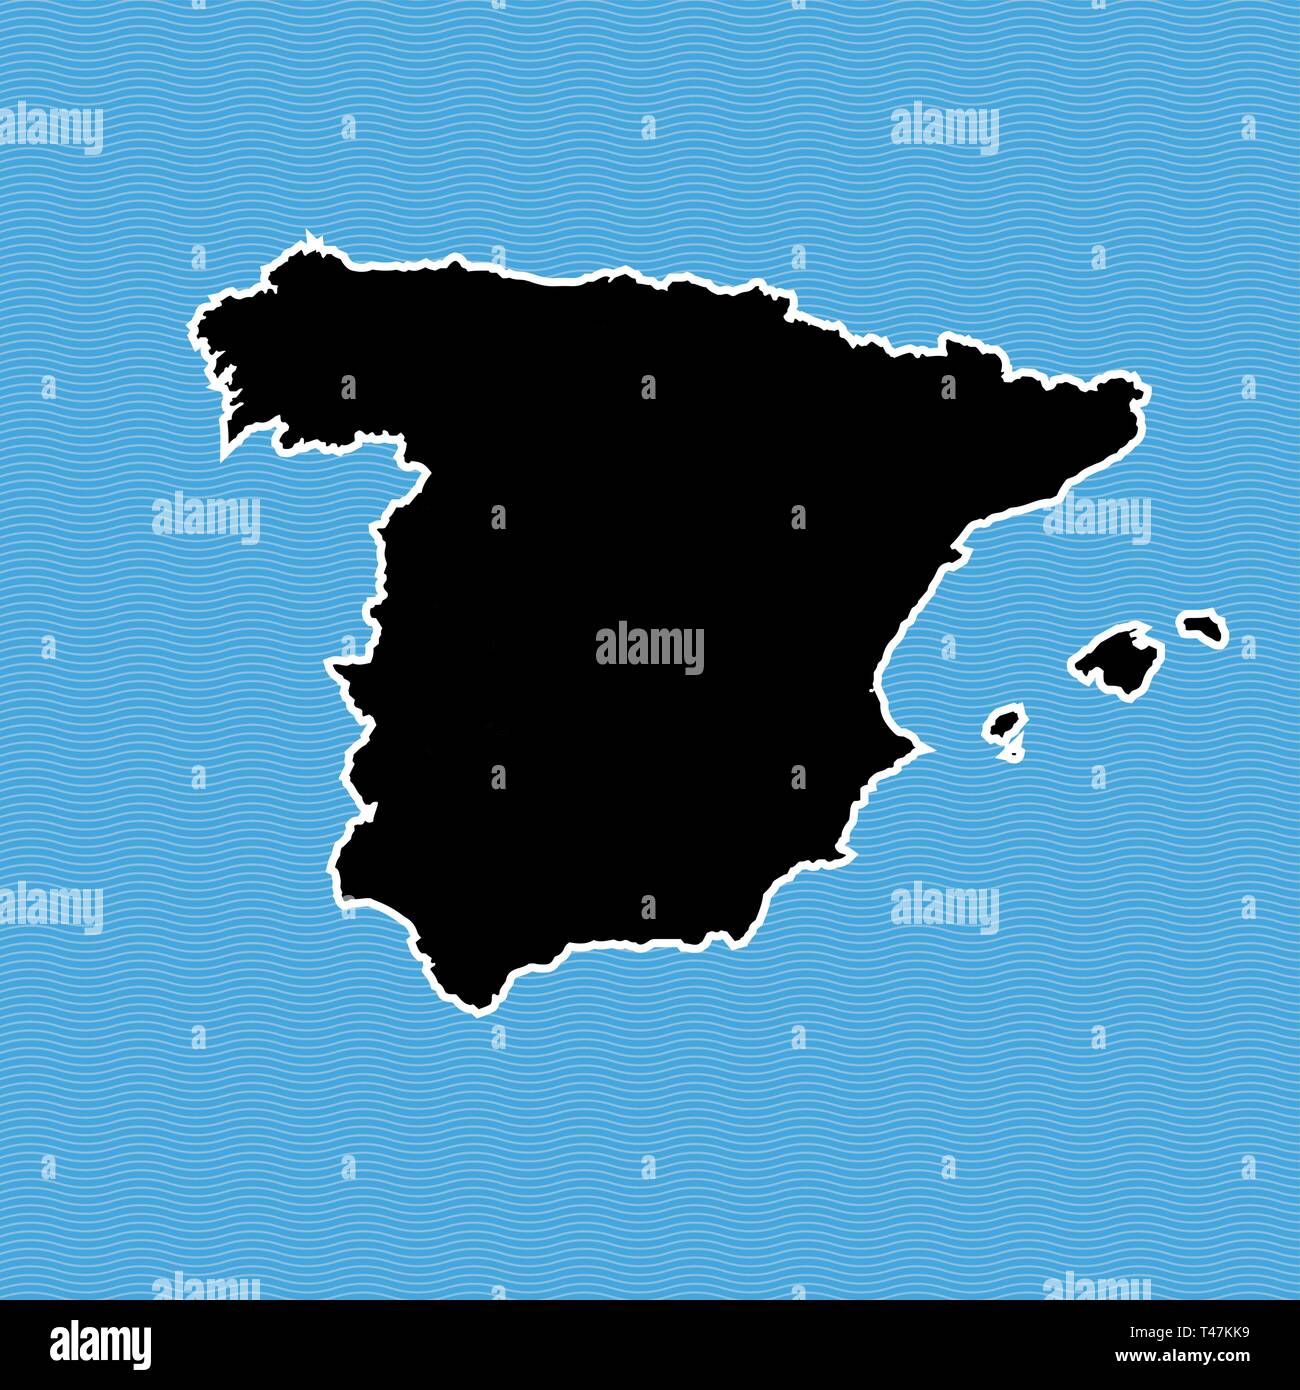 Spanien Karte als Insel. Karte auf Blue Wave Wasser Hintergrund getrennt. Stock Vektor